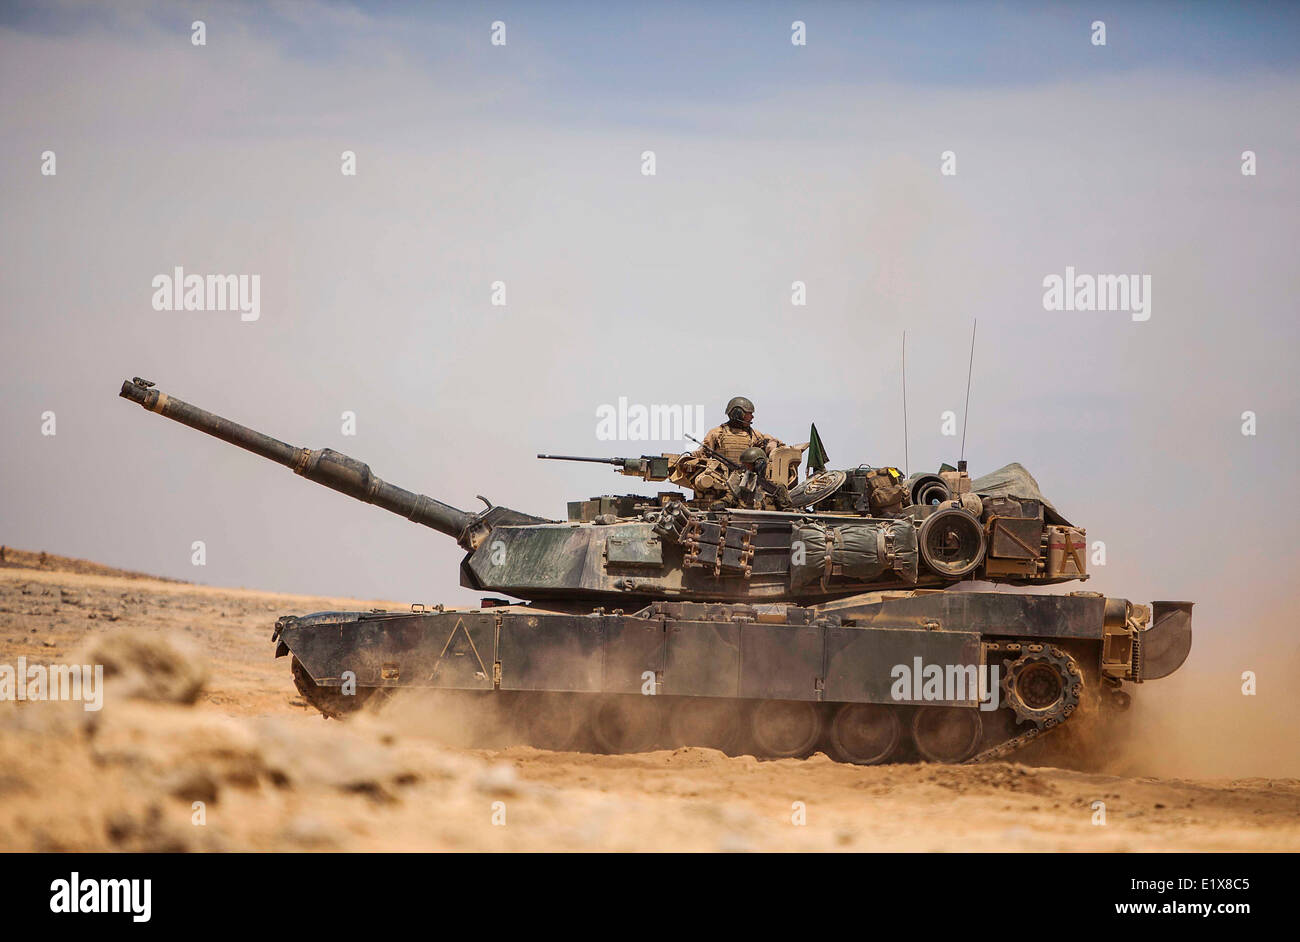 Un US Marine Corps M1A1 Abrams battaglia serbatoio assegnato alla ventiduesima Marine Expeditionary Unit riposiziona durante un'esercitazione a fuoco come parte di ansiosi Lion Maggio 30, 2014 in Jebel Petra, Giordania. Foto Stock